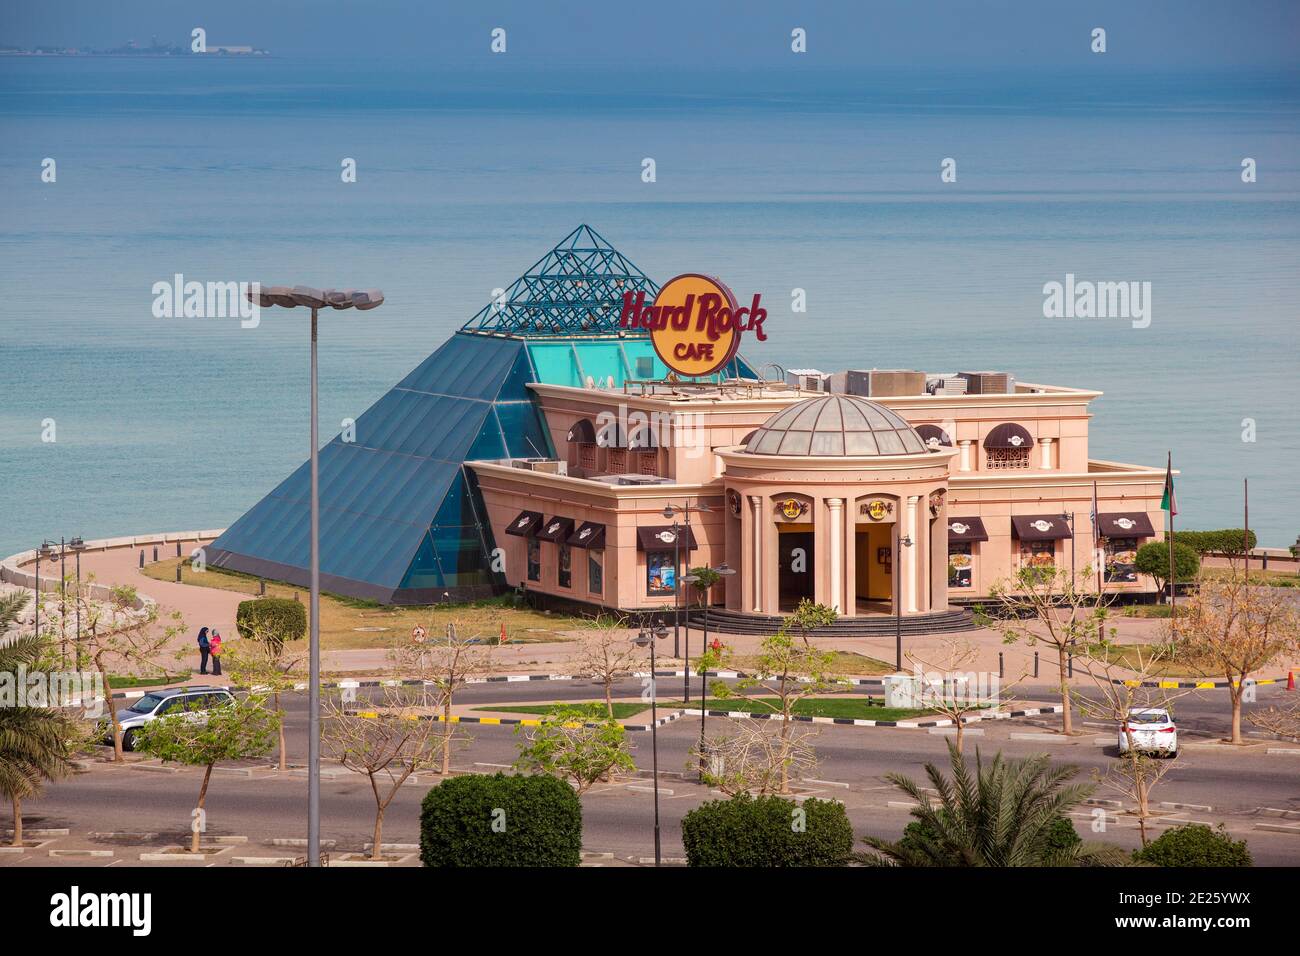 Kuwait, Kuwait City, Salmiya, Hard Rock Cafe Stock Photo